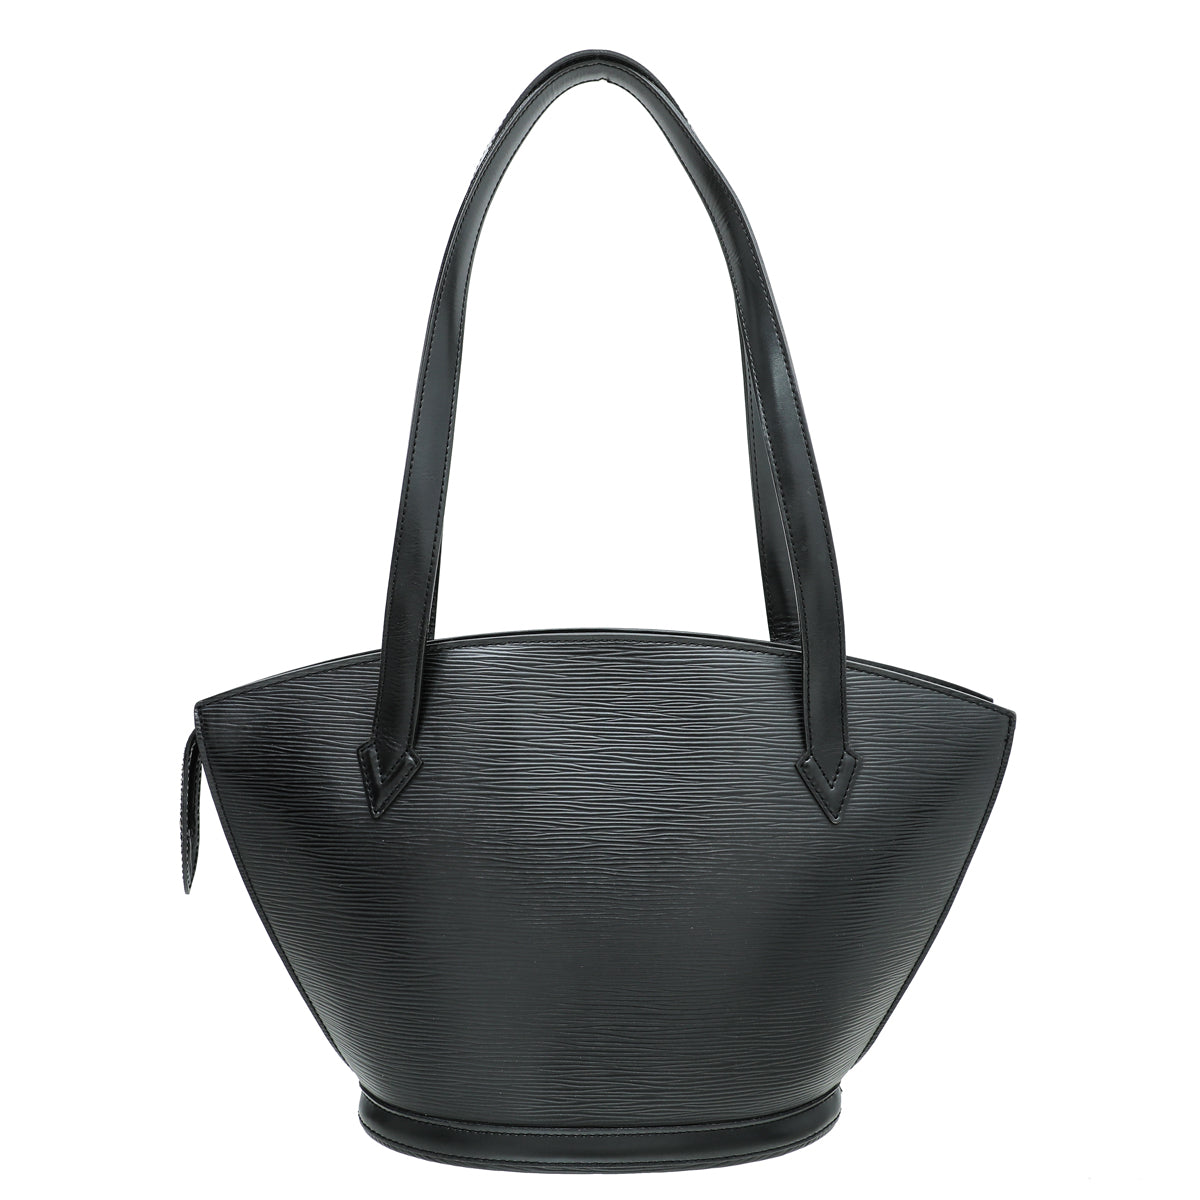 Louis Vuitton Black Saint Jacques PM Bag